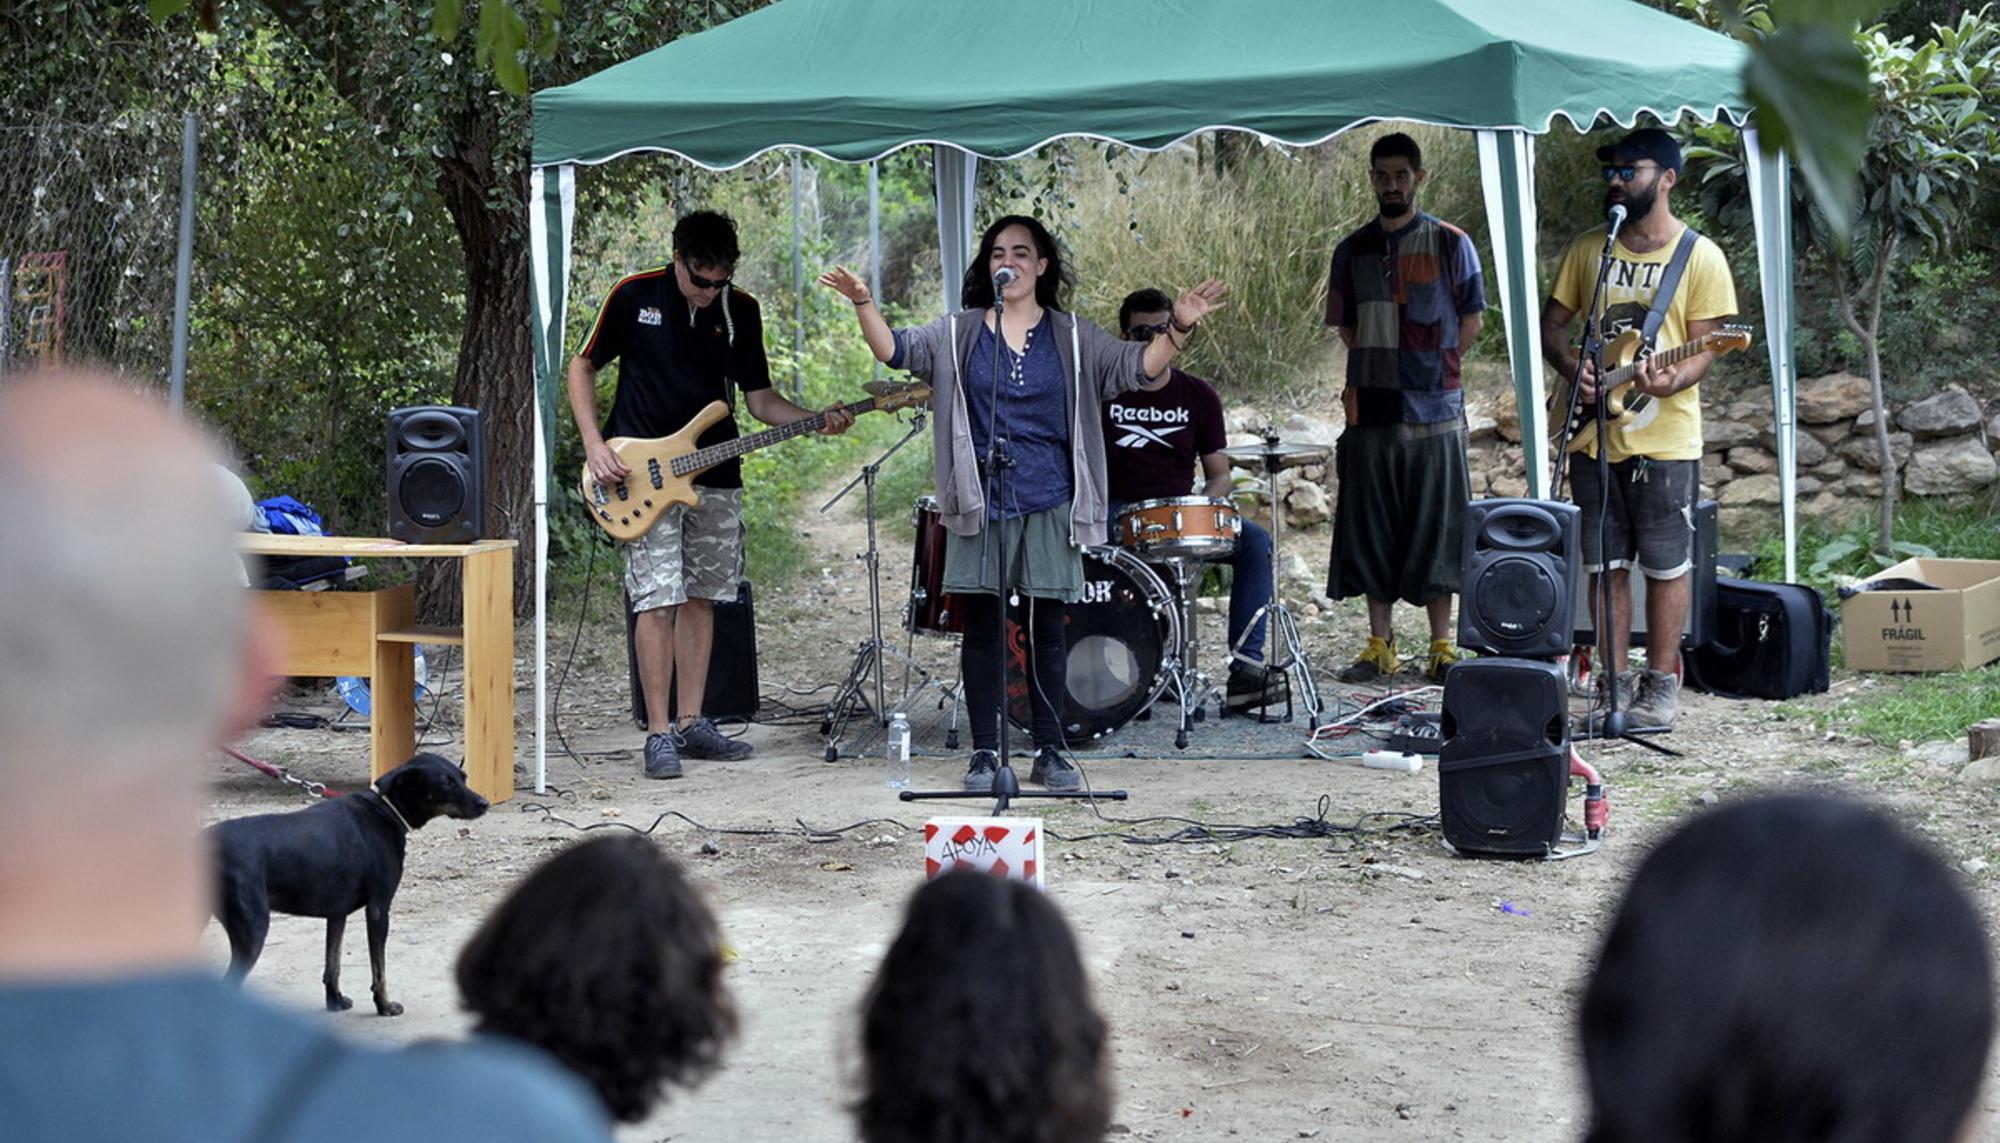 Festival ConFUSIÓN, arte y música en comunidad en el barrio valenciano de Benimaclet - 11